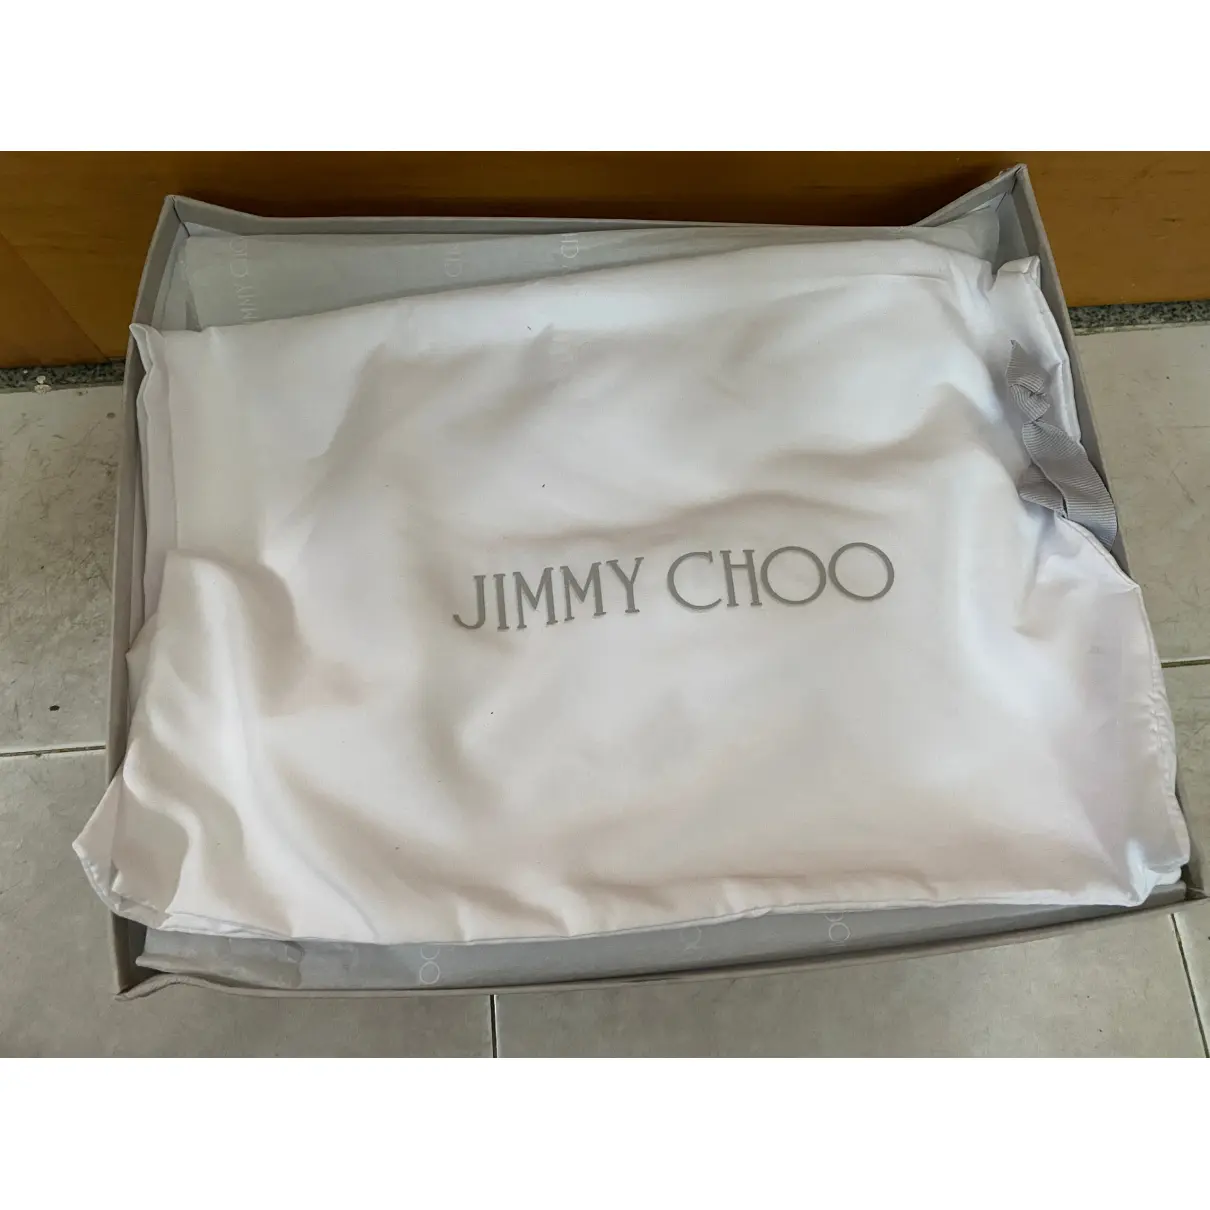 Luxury Jimmy Choo Boots Men